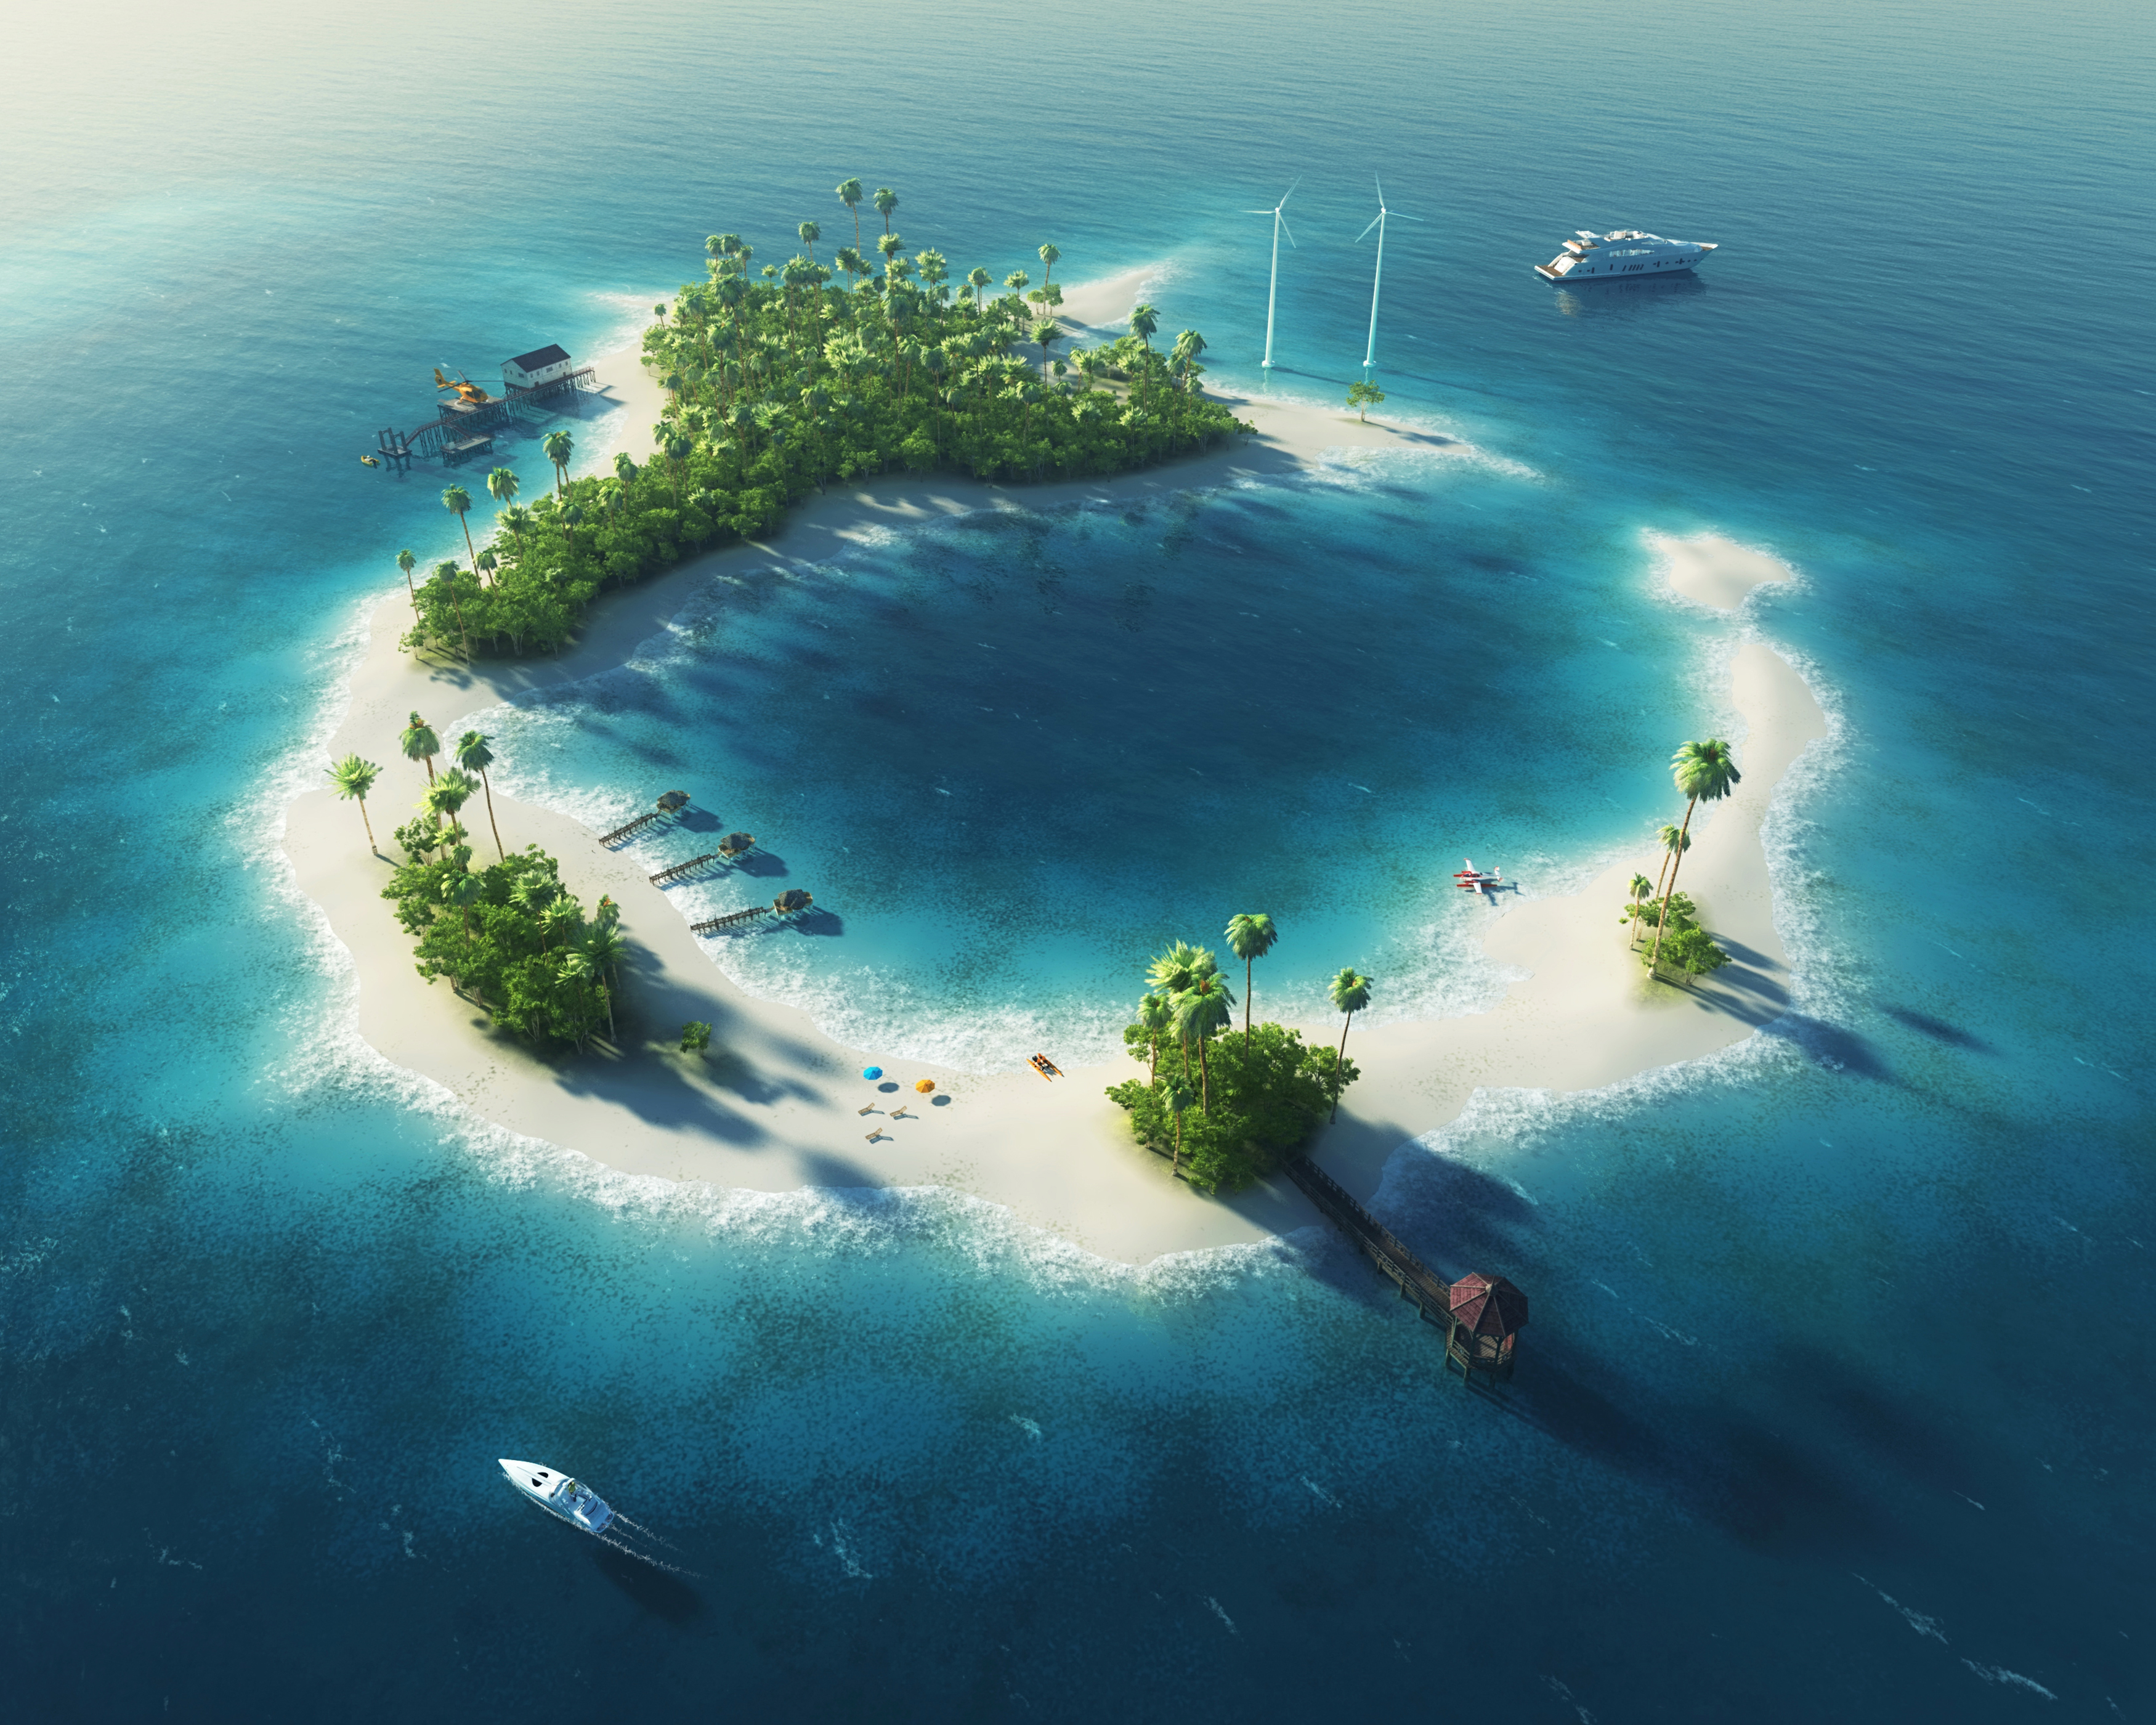 Descarga gratuita de fondo de pantalla para móvil de Océano, Isla, Barco, Artístico, Maldivas.